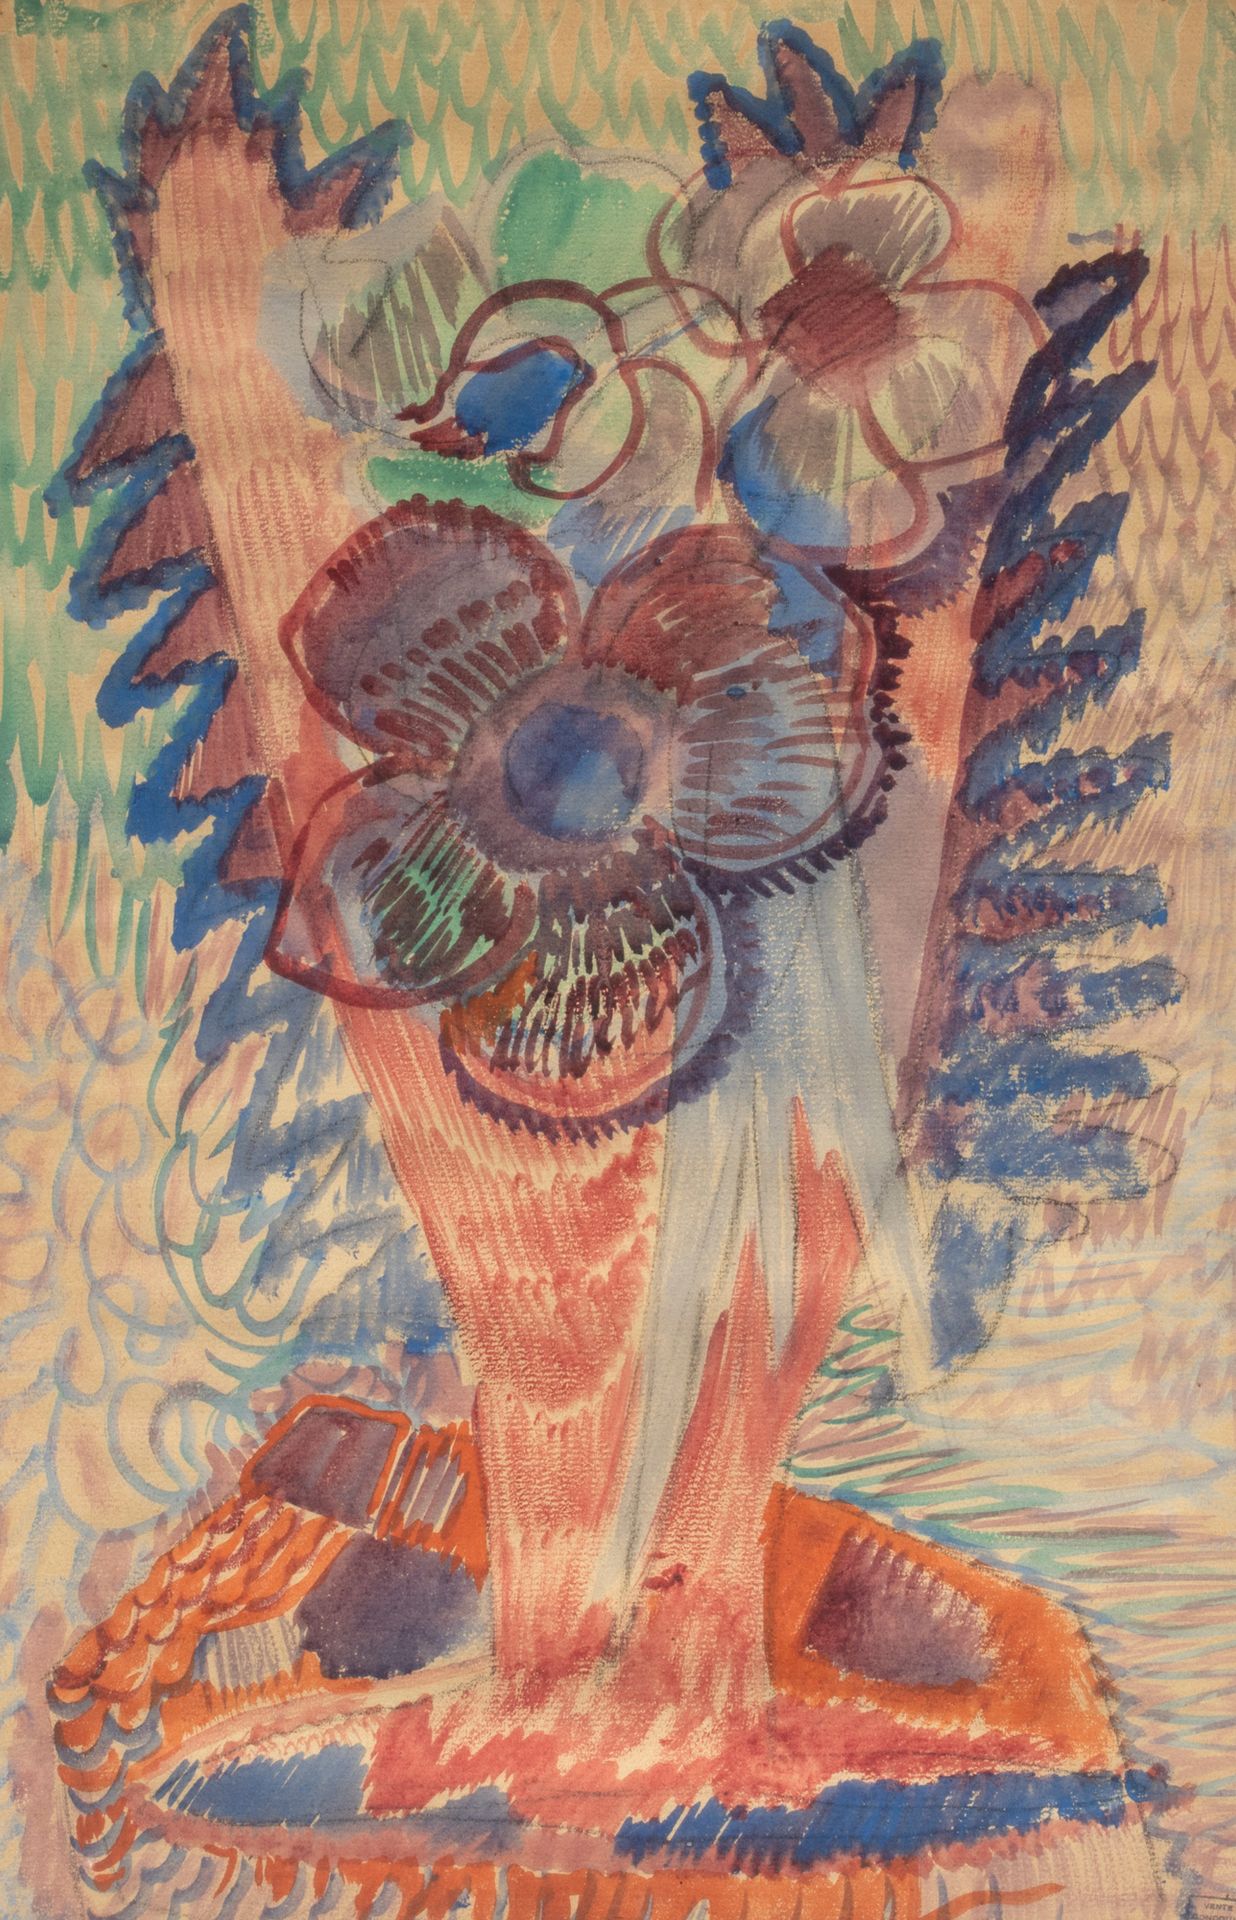 Emmanuel GONDOUIN (1883-1934) Fiori
Acquerello su carta, timbro di vendita dello&hellip;